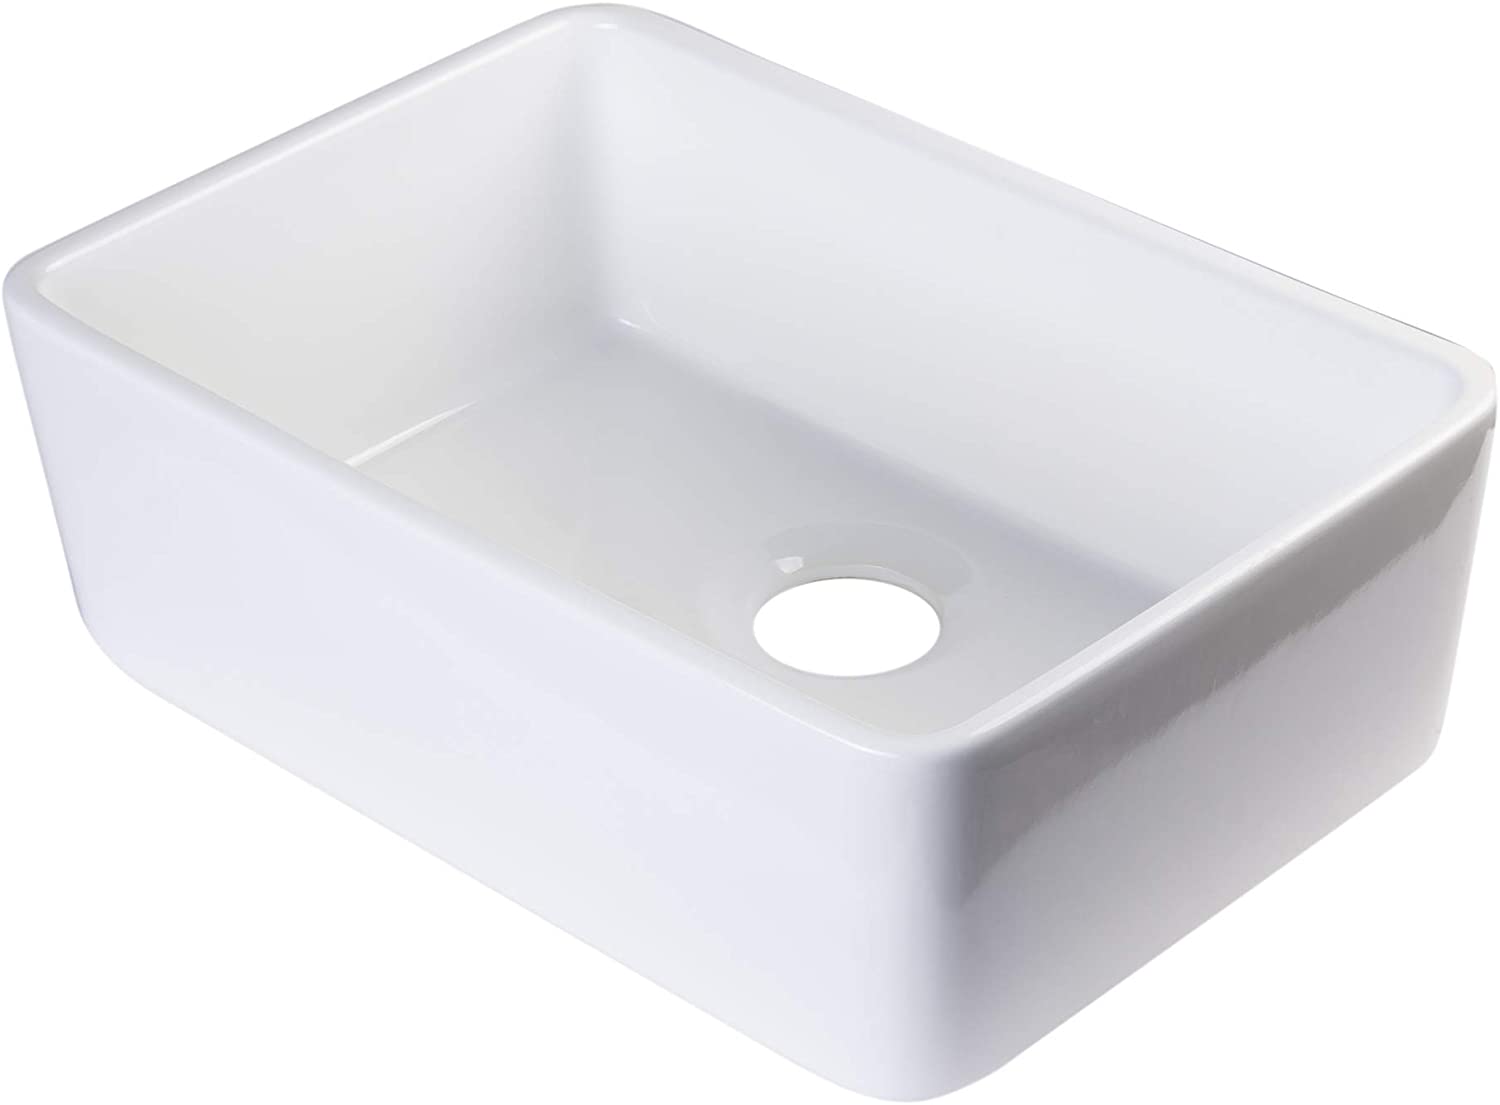 AB503UM-W White Single Bowl Fireclay Undermount Kitchen Sink, 24